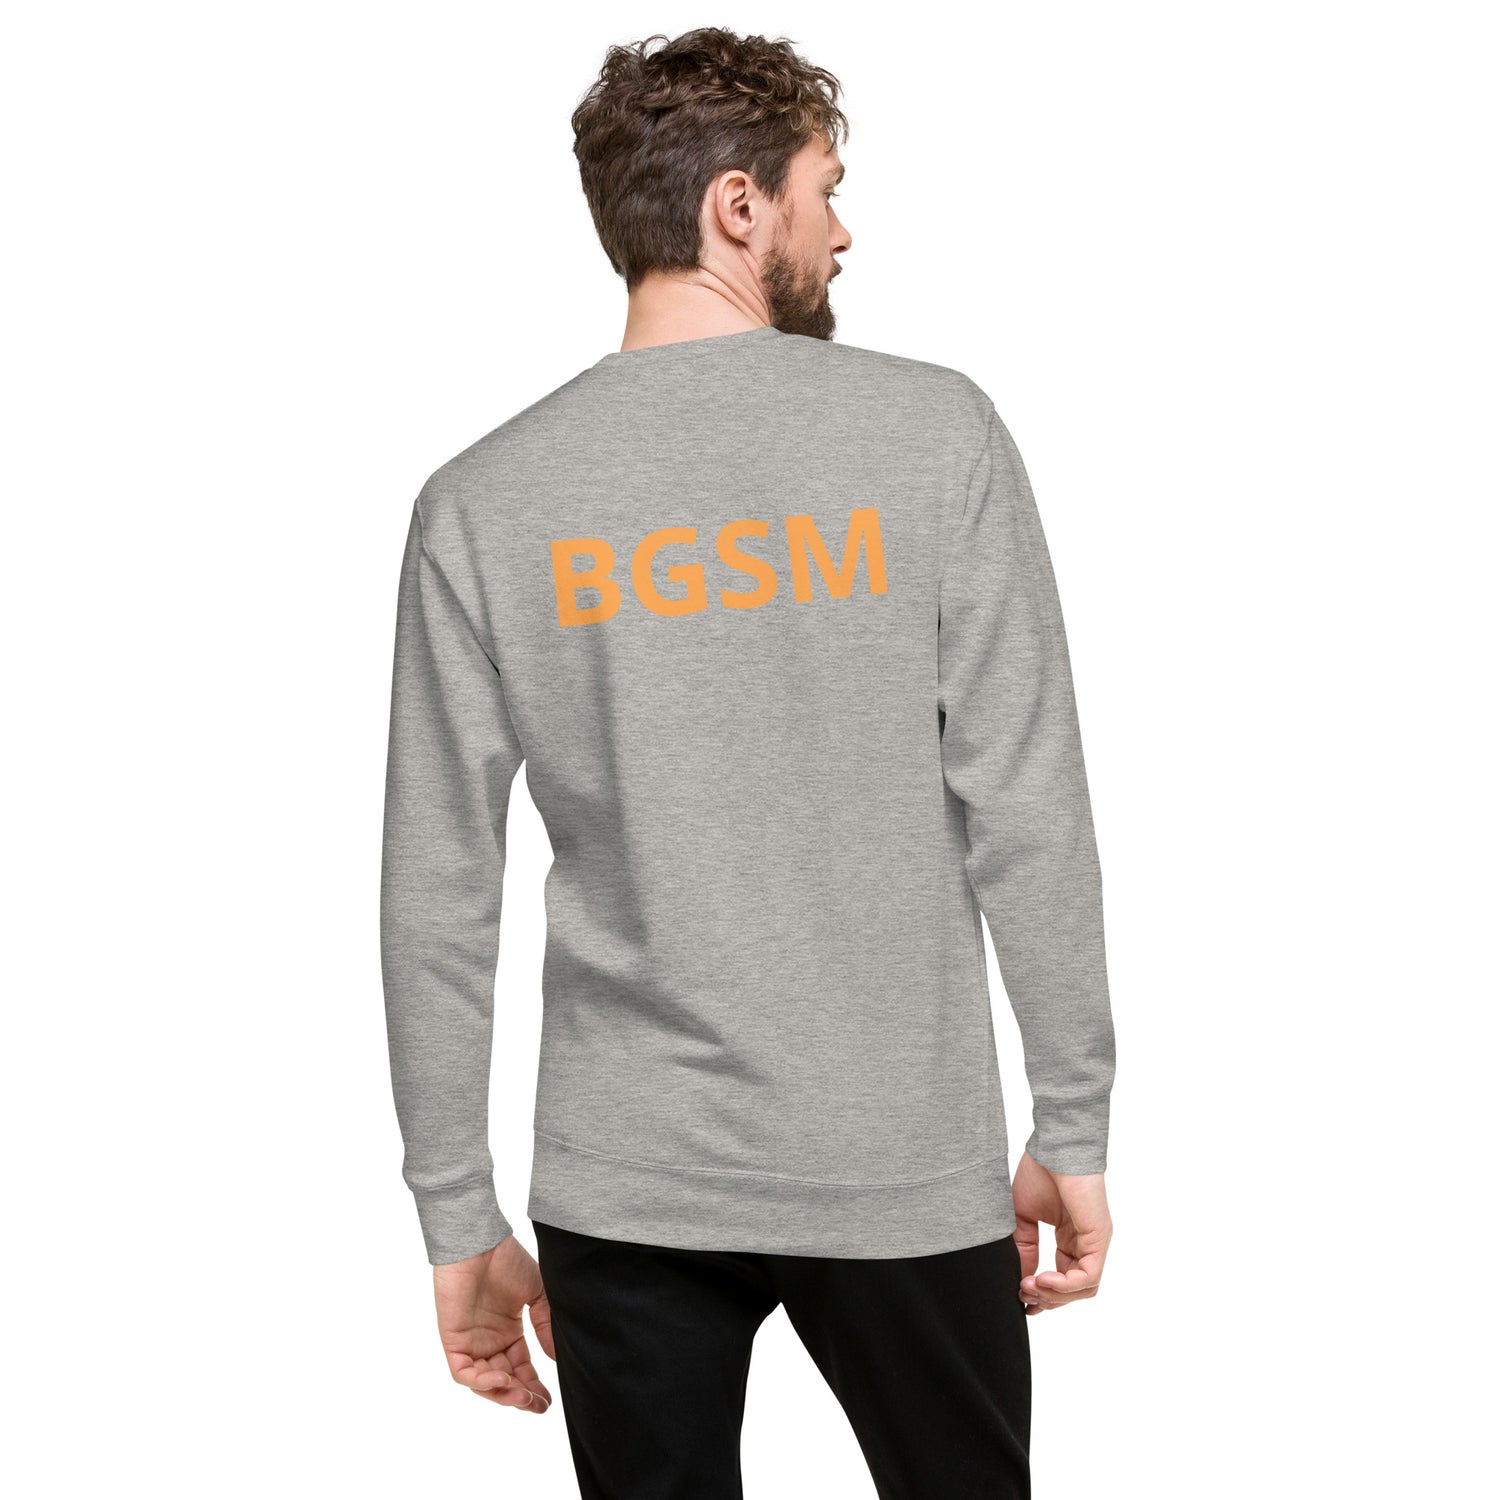 Bgsm Unisex Premium Sweatshirt - BGSM BOUTIQUE 